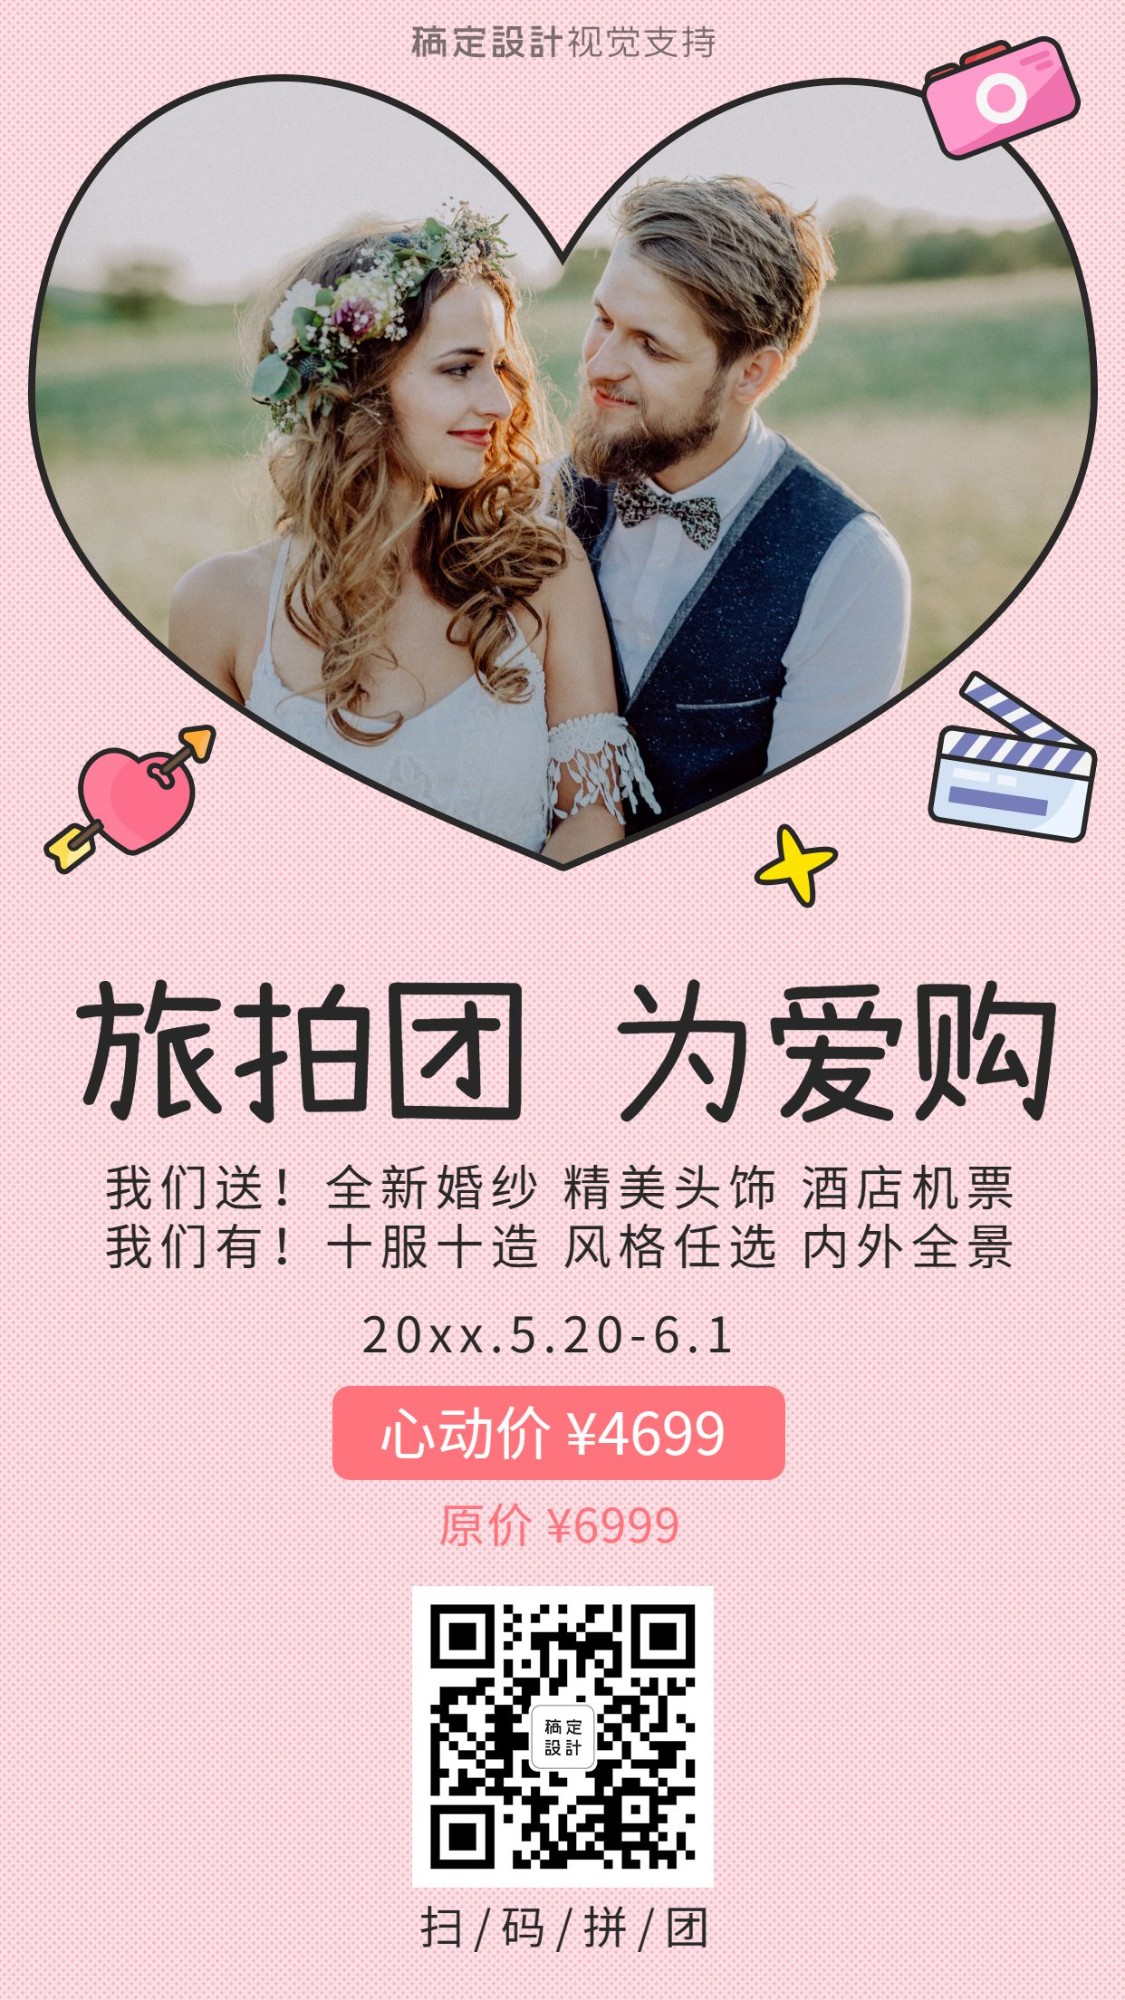 520情人节旅拍为爱购婚纱摄影相册活动促销预览效果